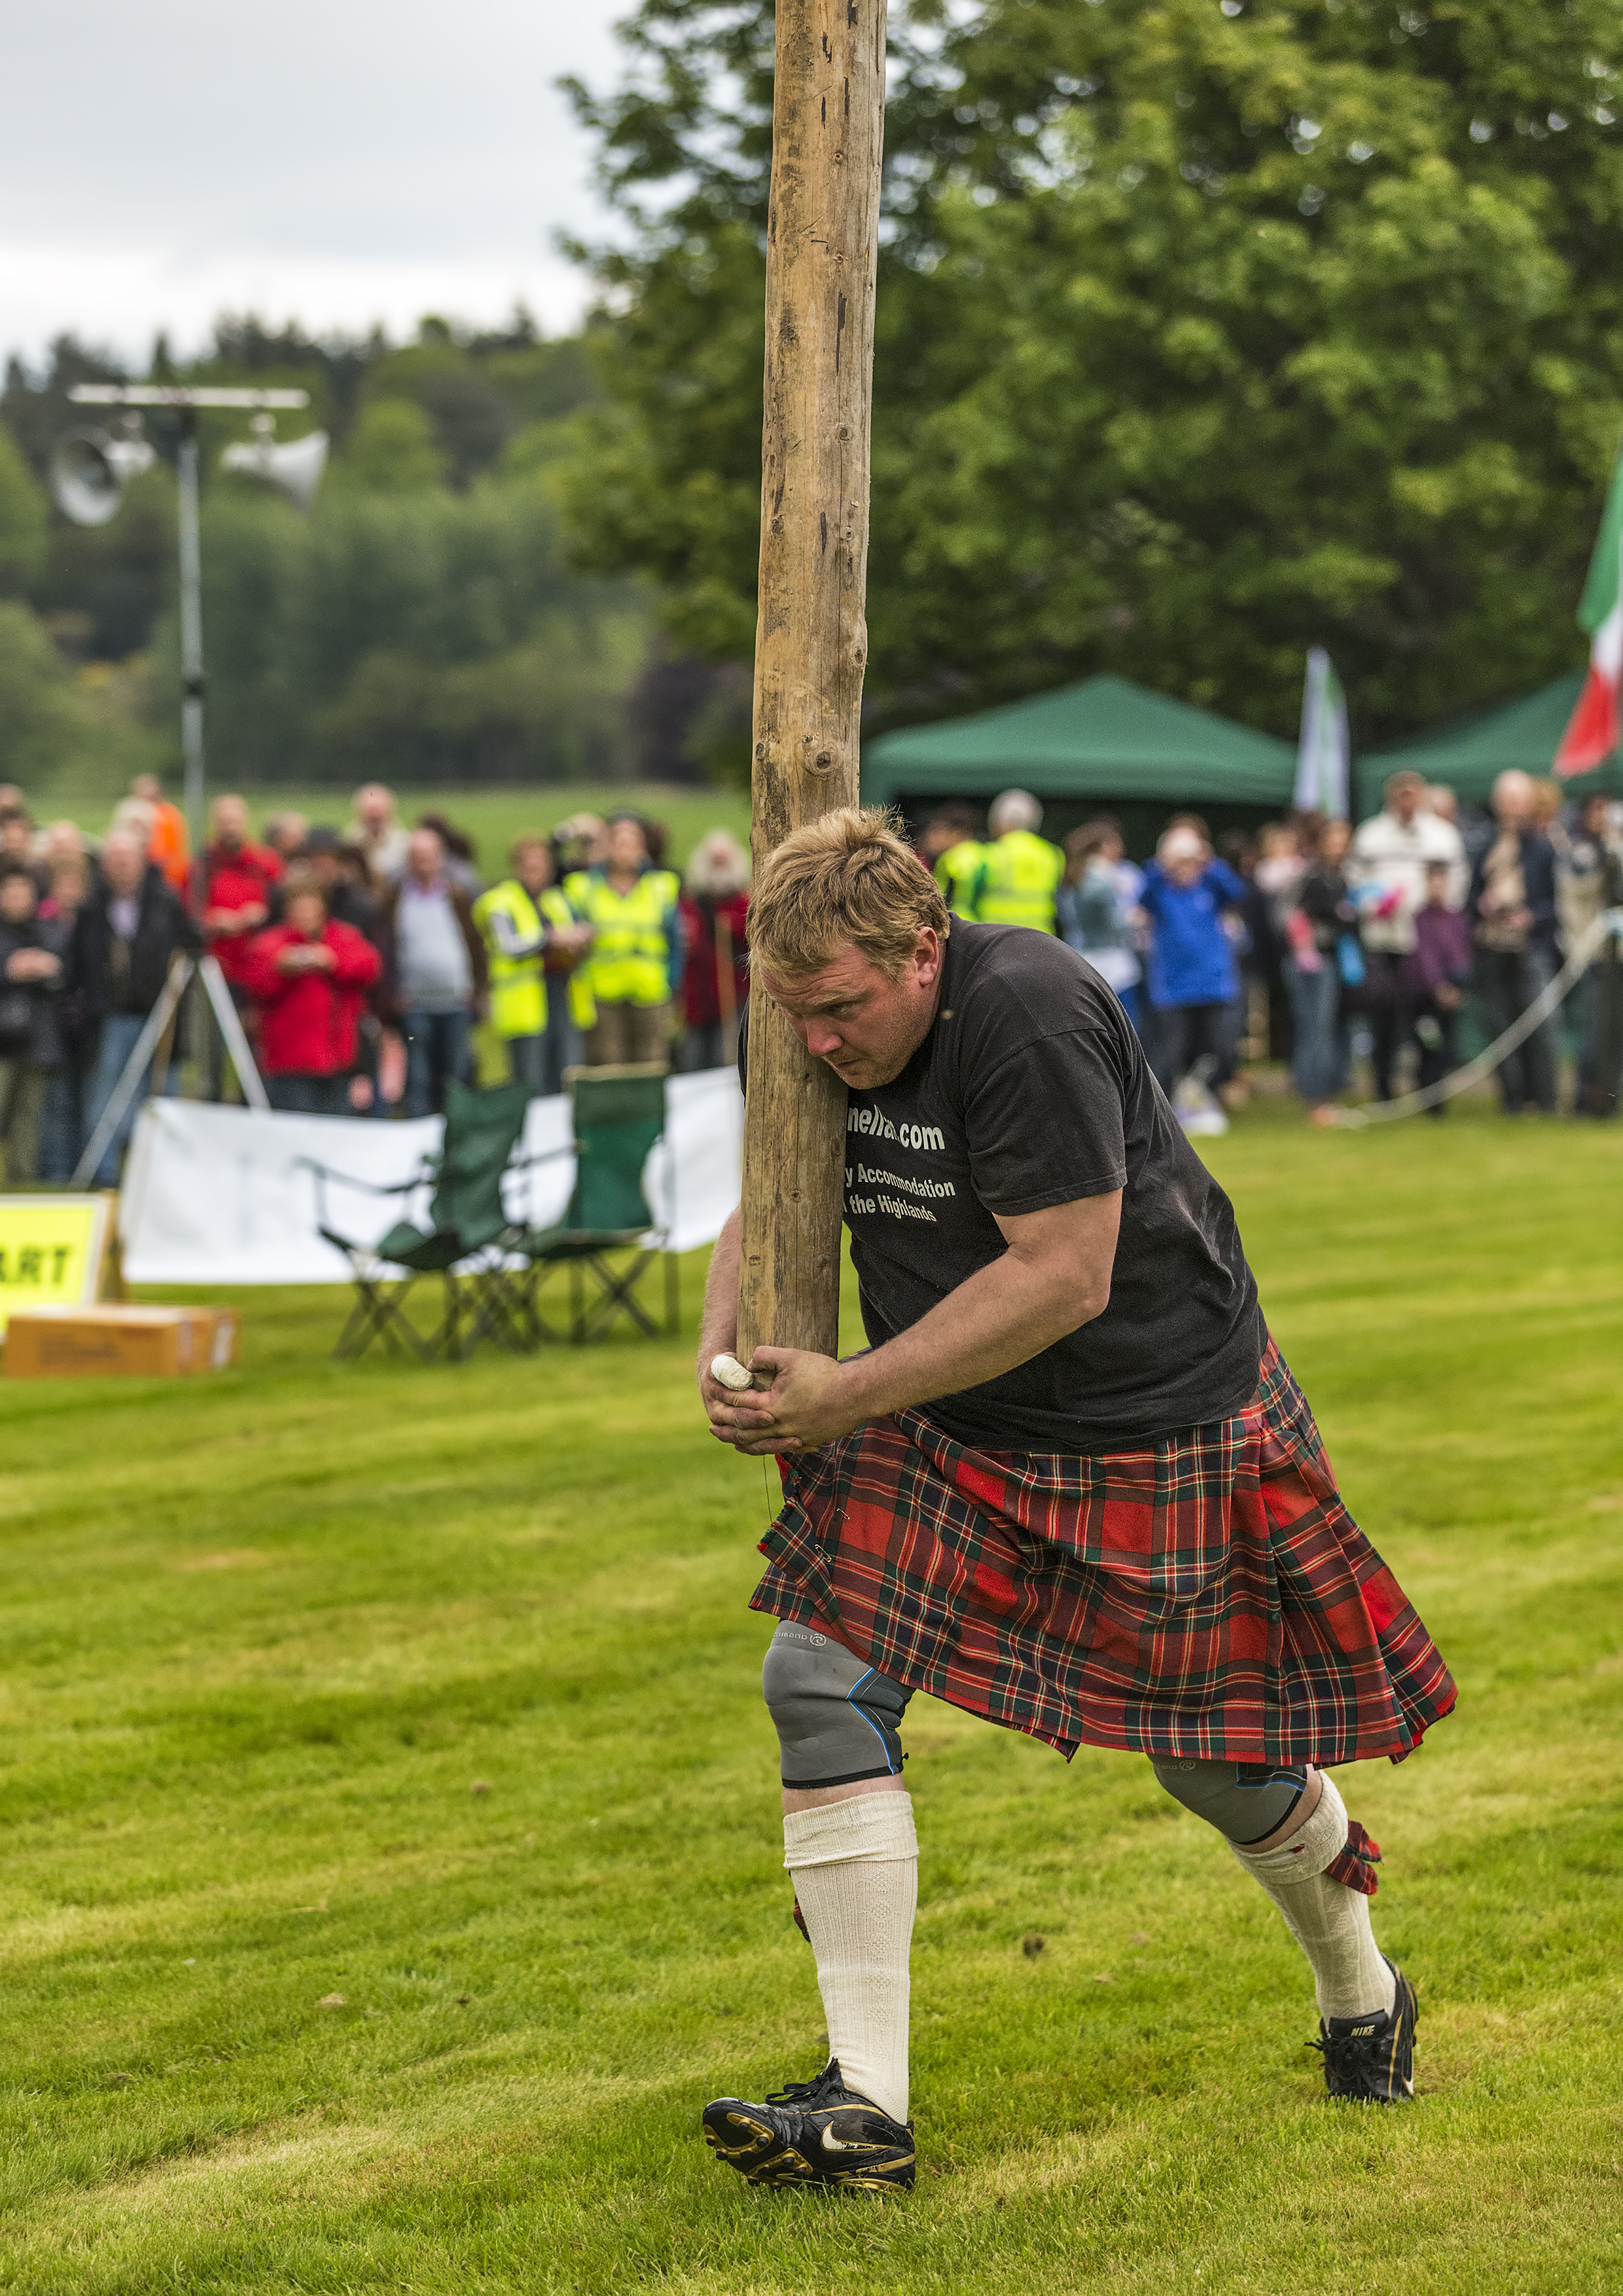 Highlander games in Scotland UK